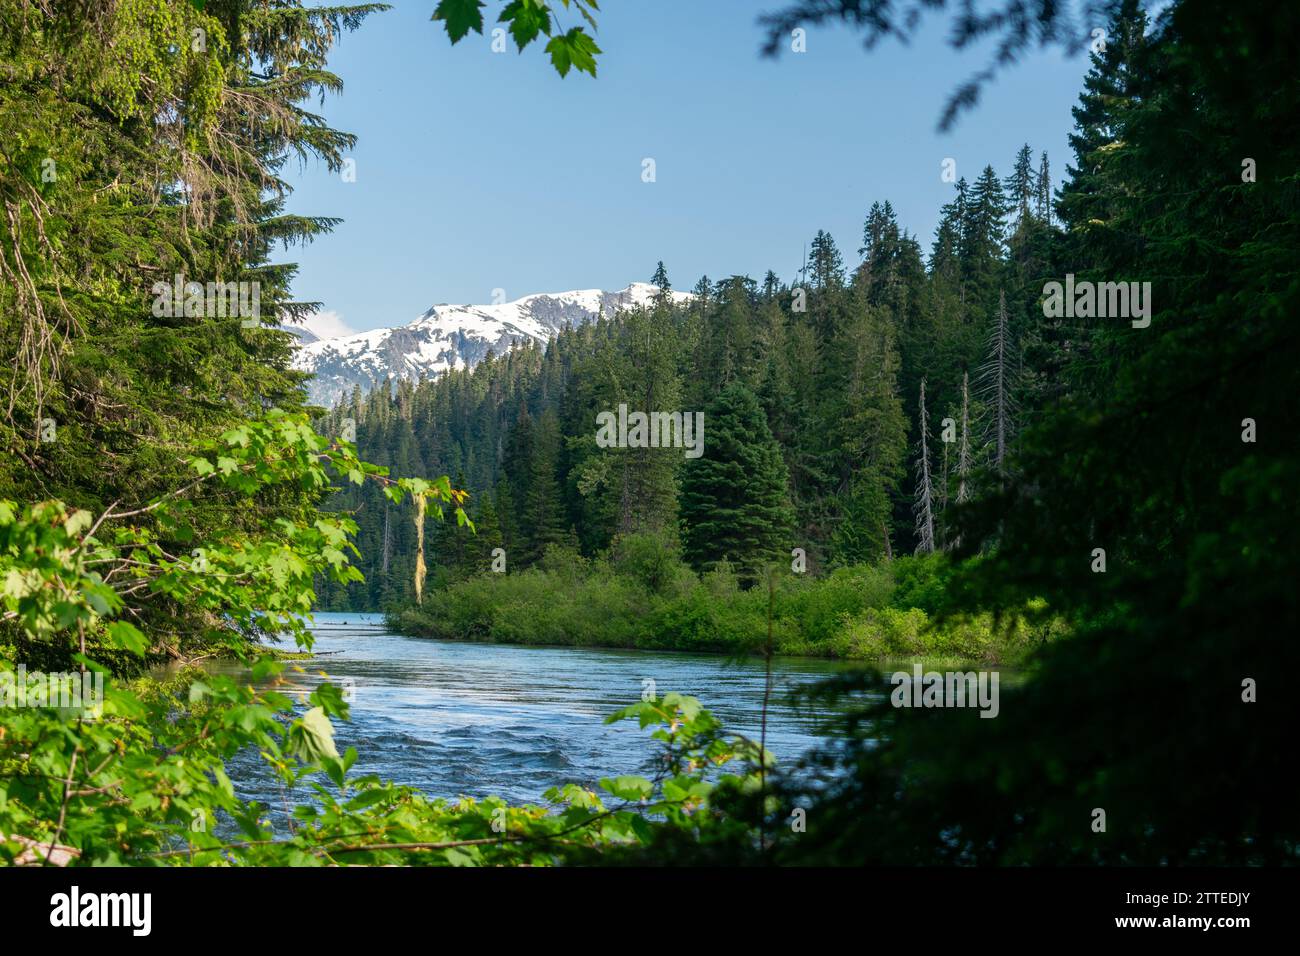 Il fiume Cheakamus si snoda attraverso una fitta foresta con una vista mozzafiato sulle montagne innevate nella vasta natura selvaggia della Columbia Britannica. Foto Stock